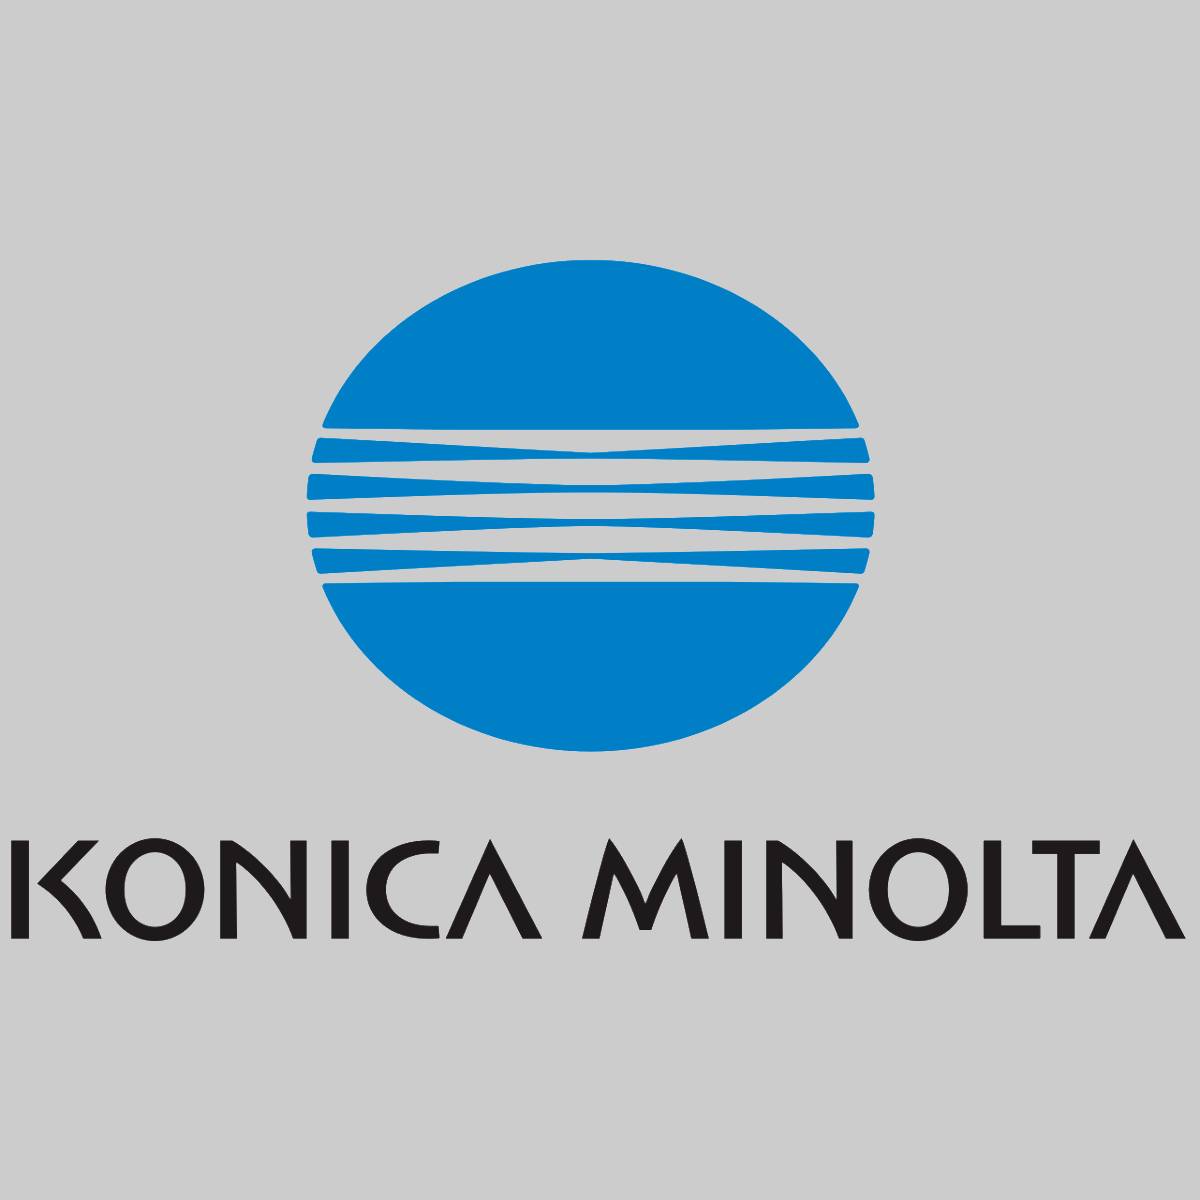 "Toner d'origine Konica Minolta noir A0V301H pour Magicolor 1600-1690 NOUVEAU OVP